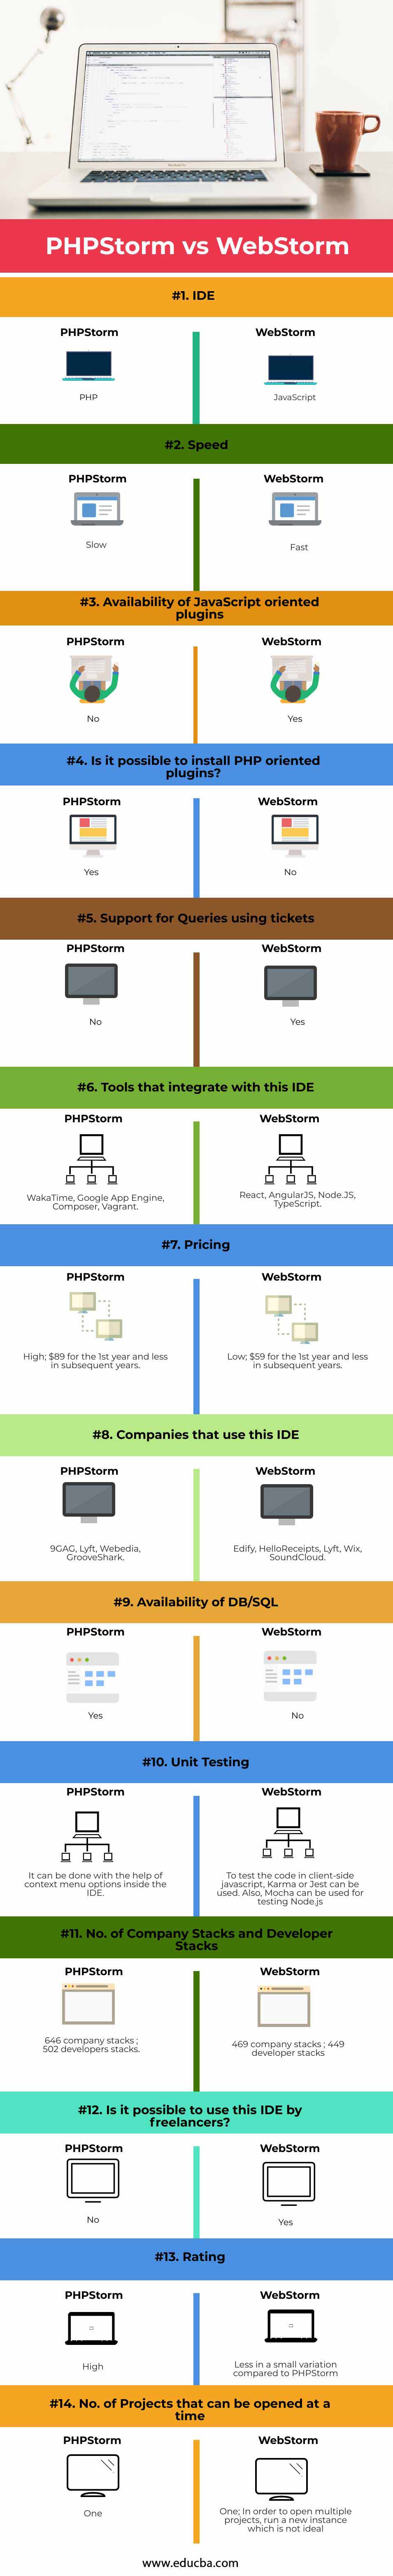 PHPStorm-vs-WebStorm-info